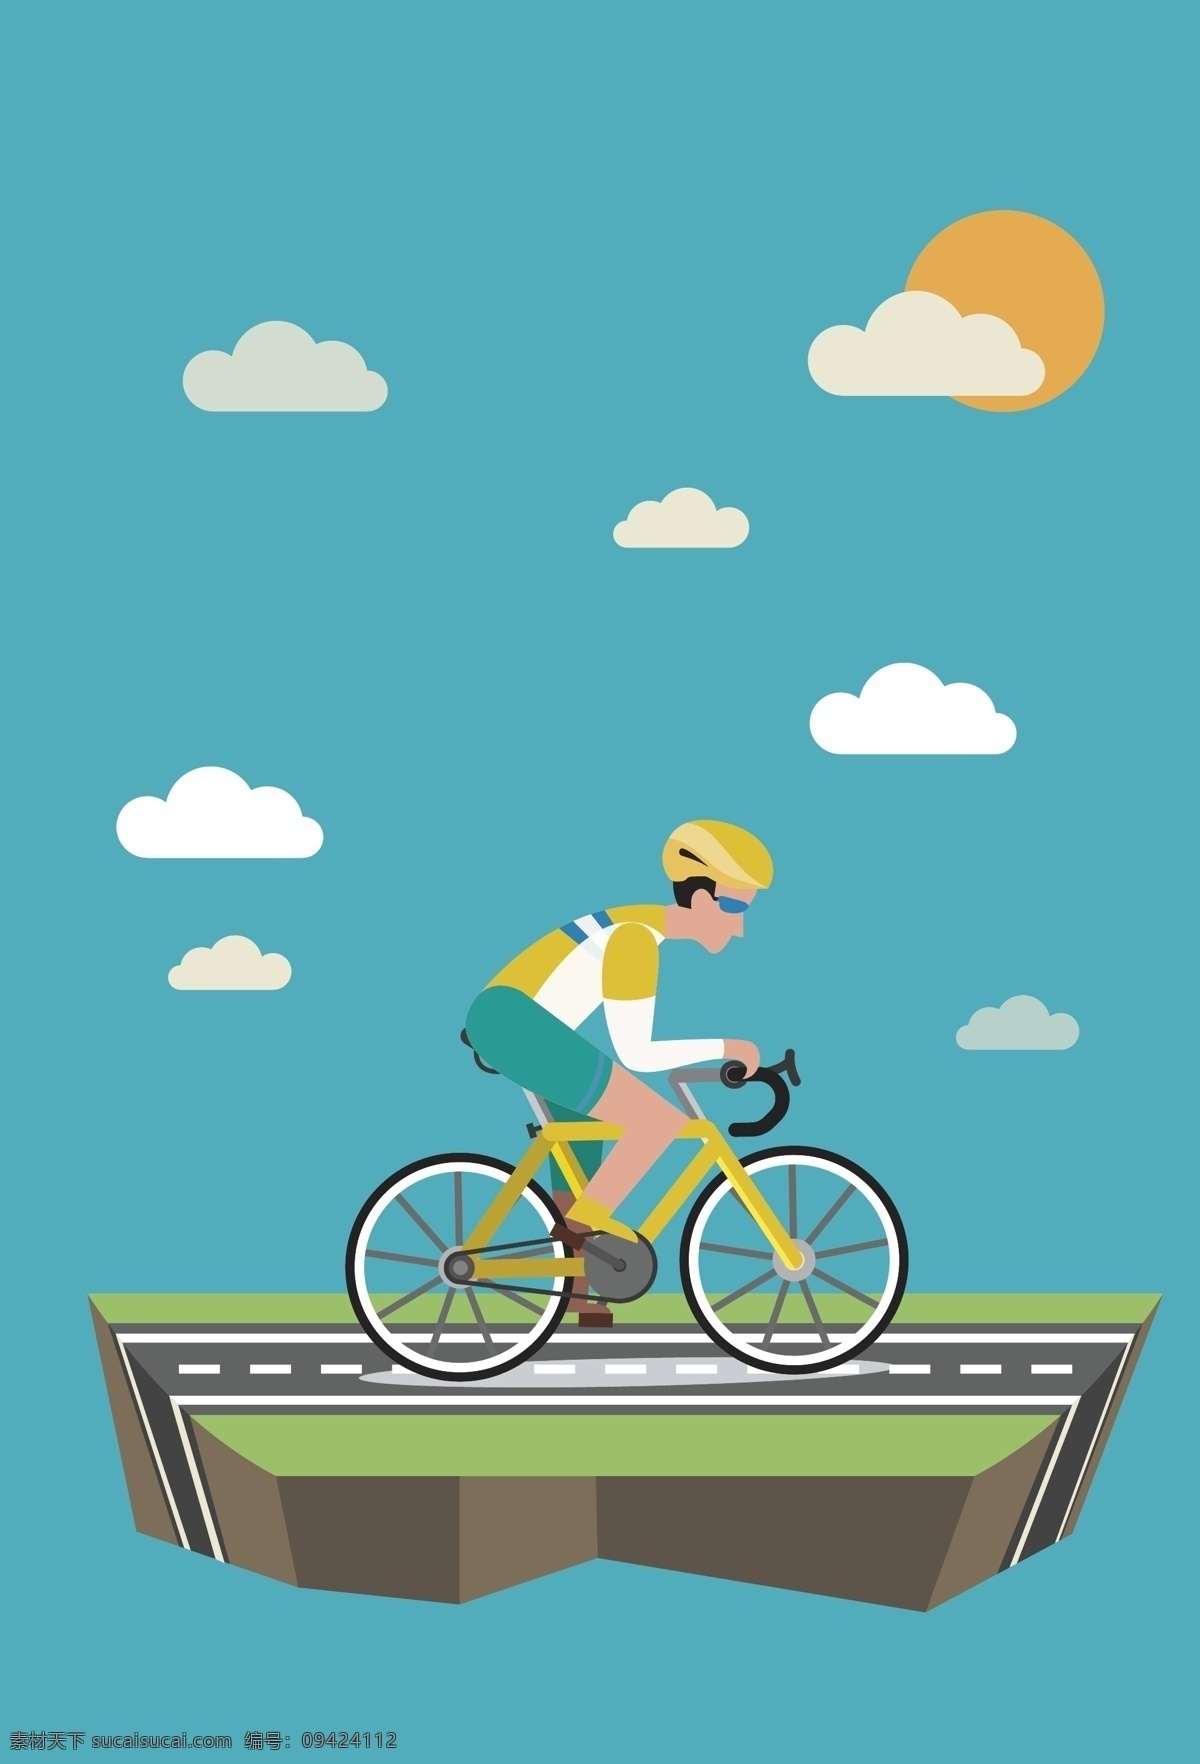 卡通 矢量 蓝 底 运动 海报 背景 蓝底 骑自行车 太阳 云朵 公路 海报背景